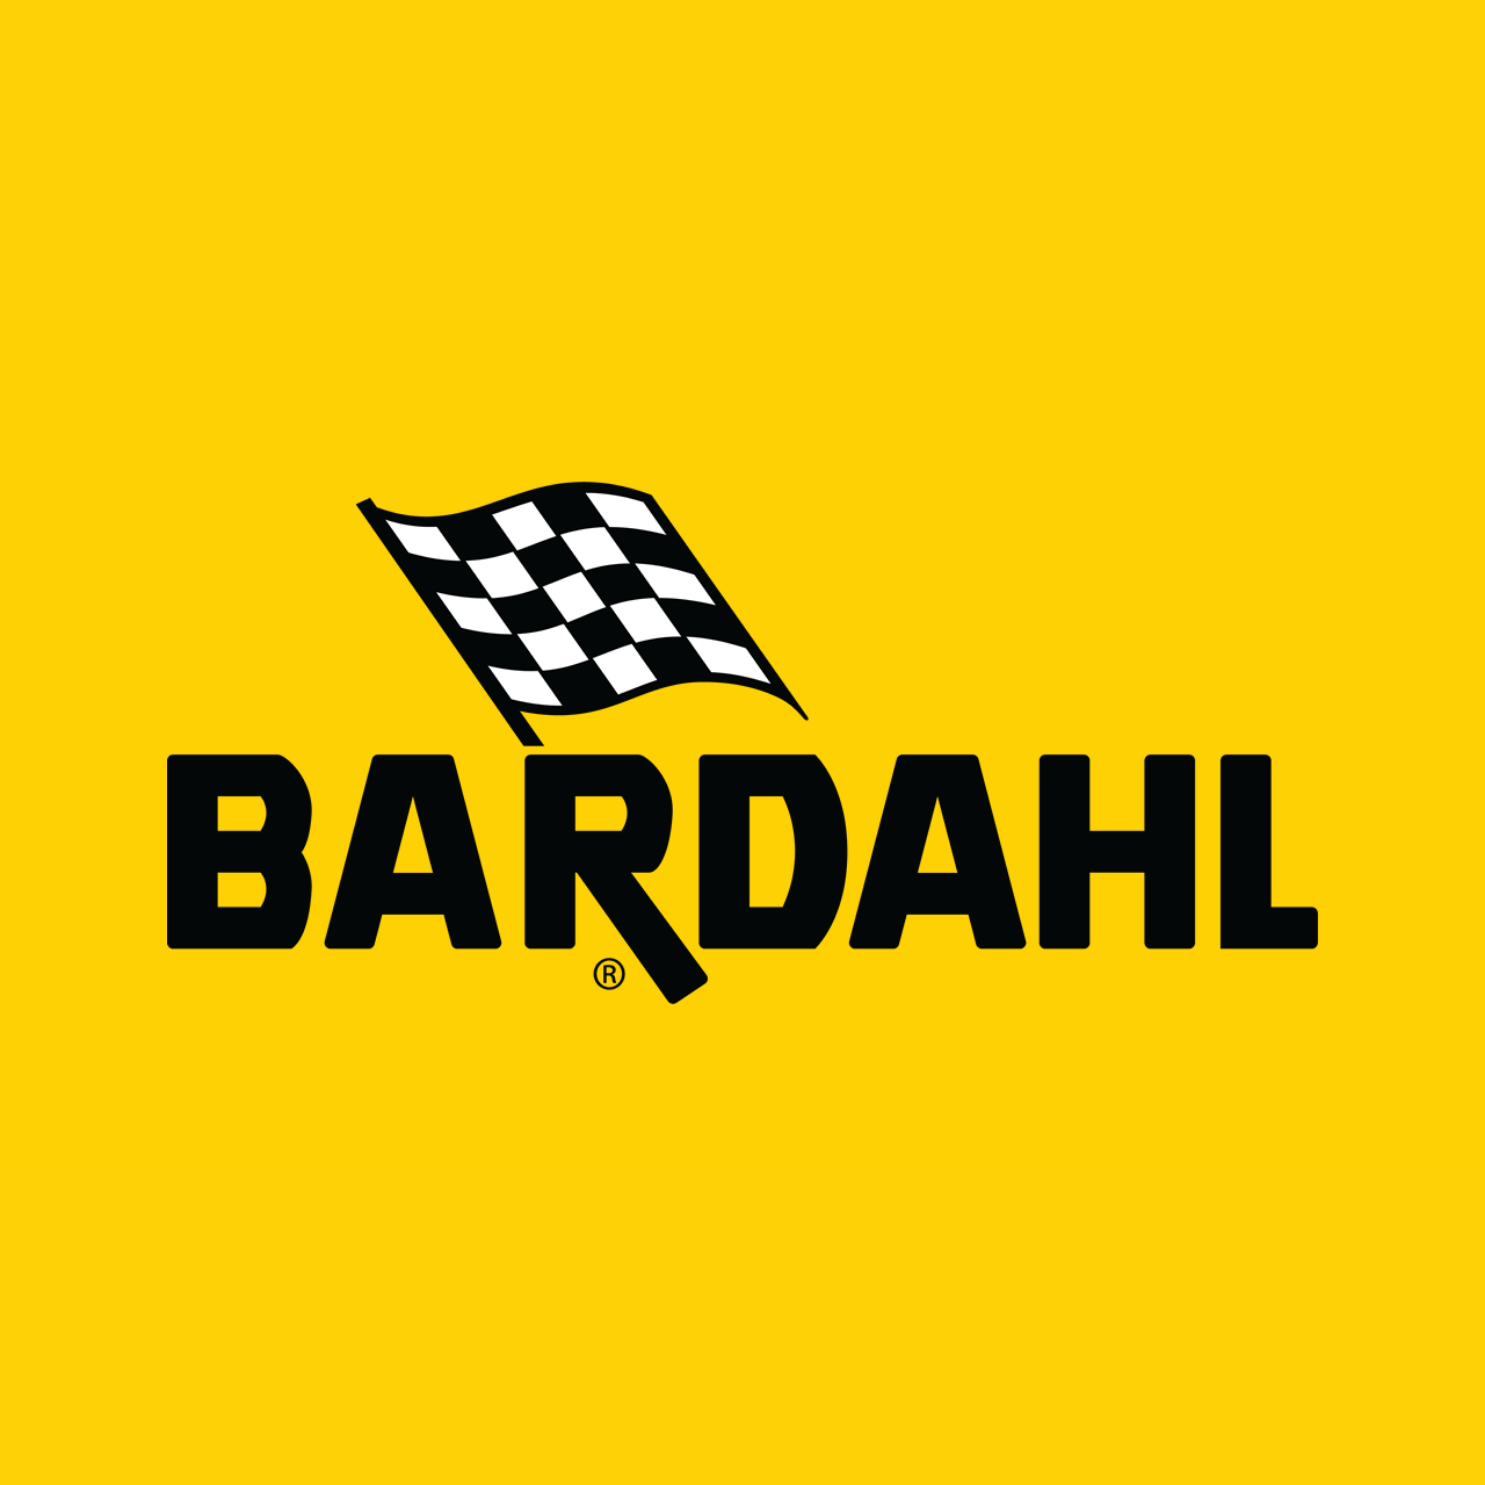 Productos de la marca Bardahl - FERRETERÍA WITZI